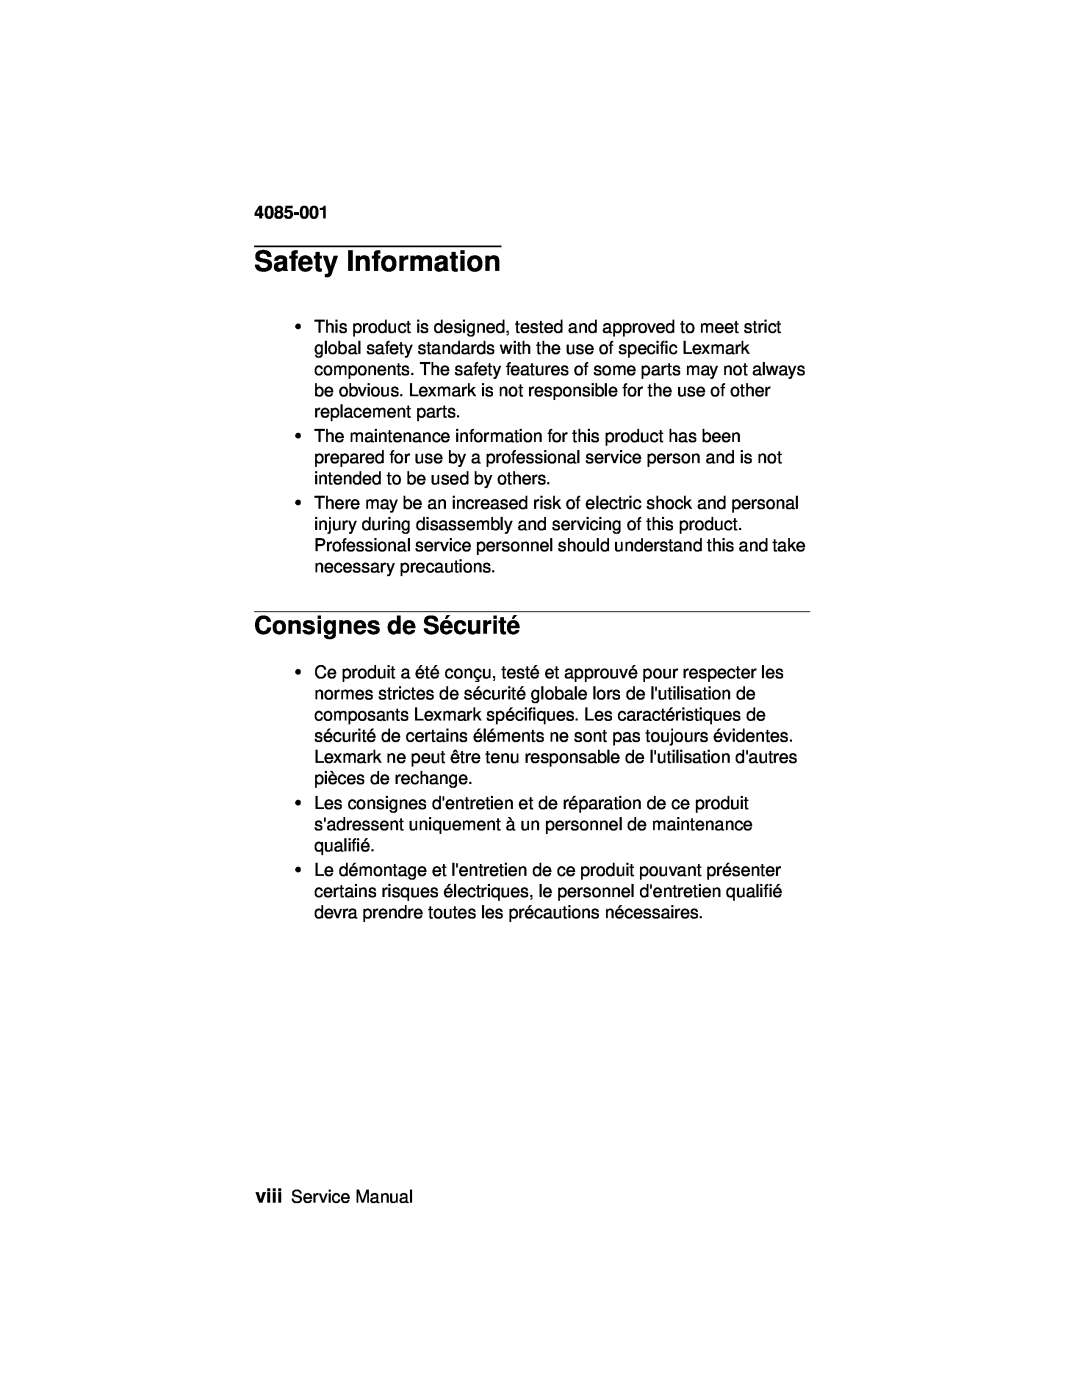 Lexmark J110, Printer manual Safety Information, Consignes de Sécurité, 4085-001 